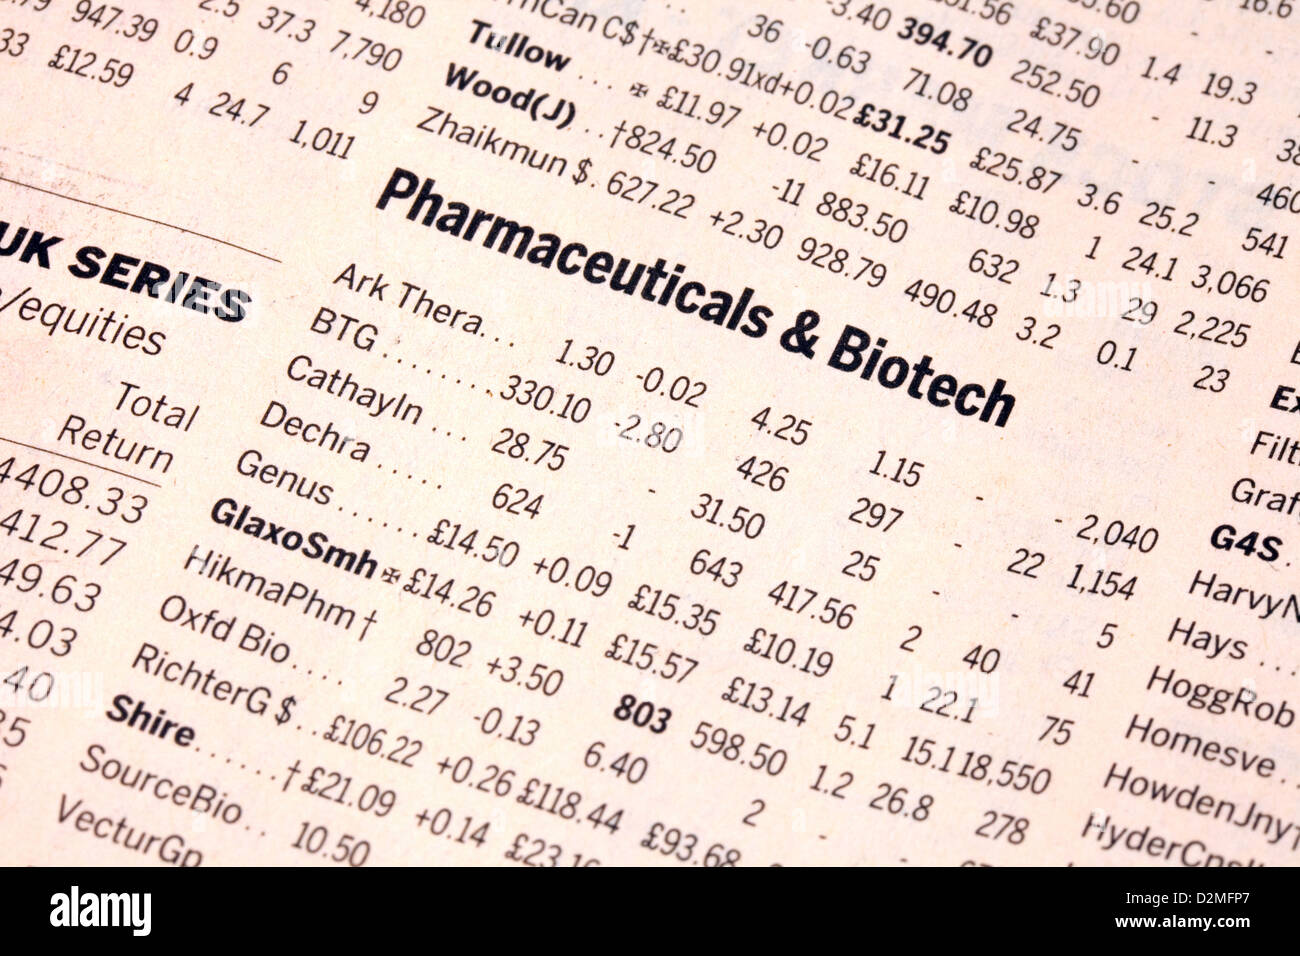 Pharma und Biotech-Aktien und Aktien in der Financial Times Zeitung, UK Stockfoto